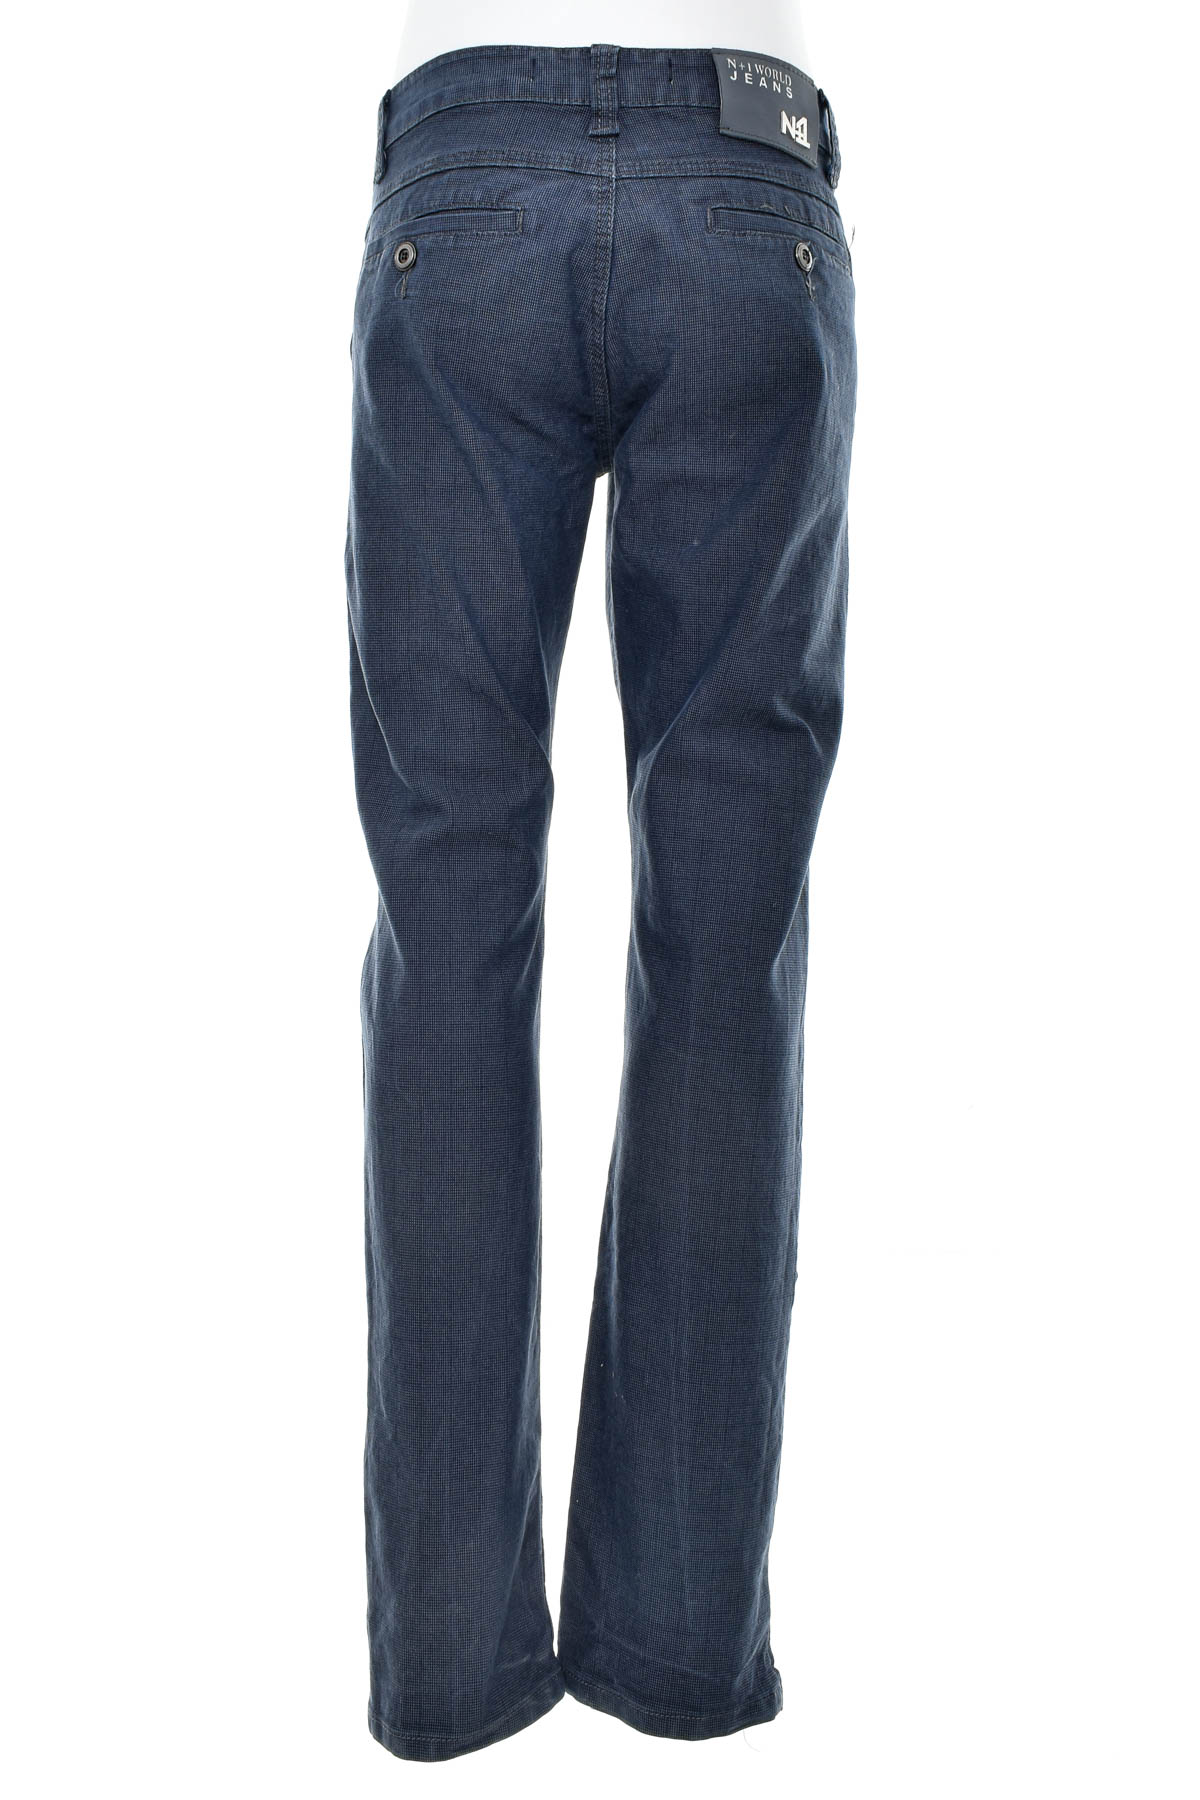 Men's trousers - N+1 JEANS - 1